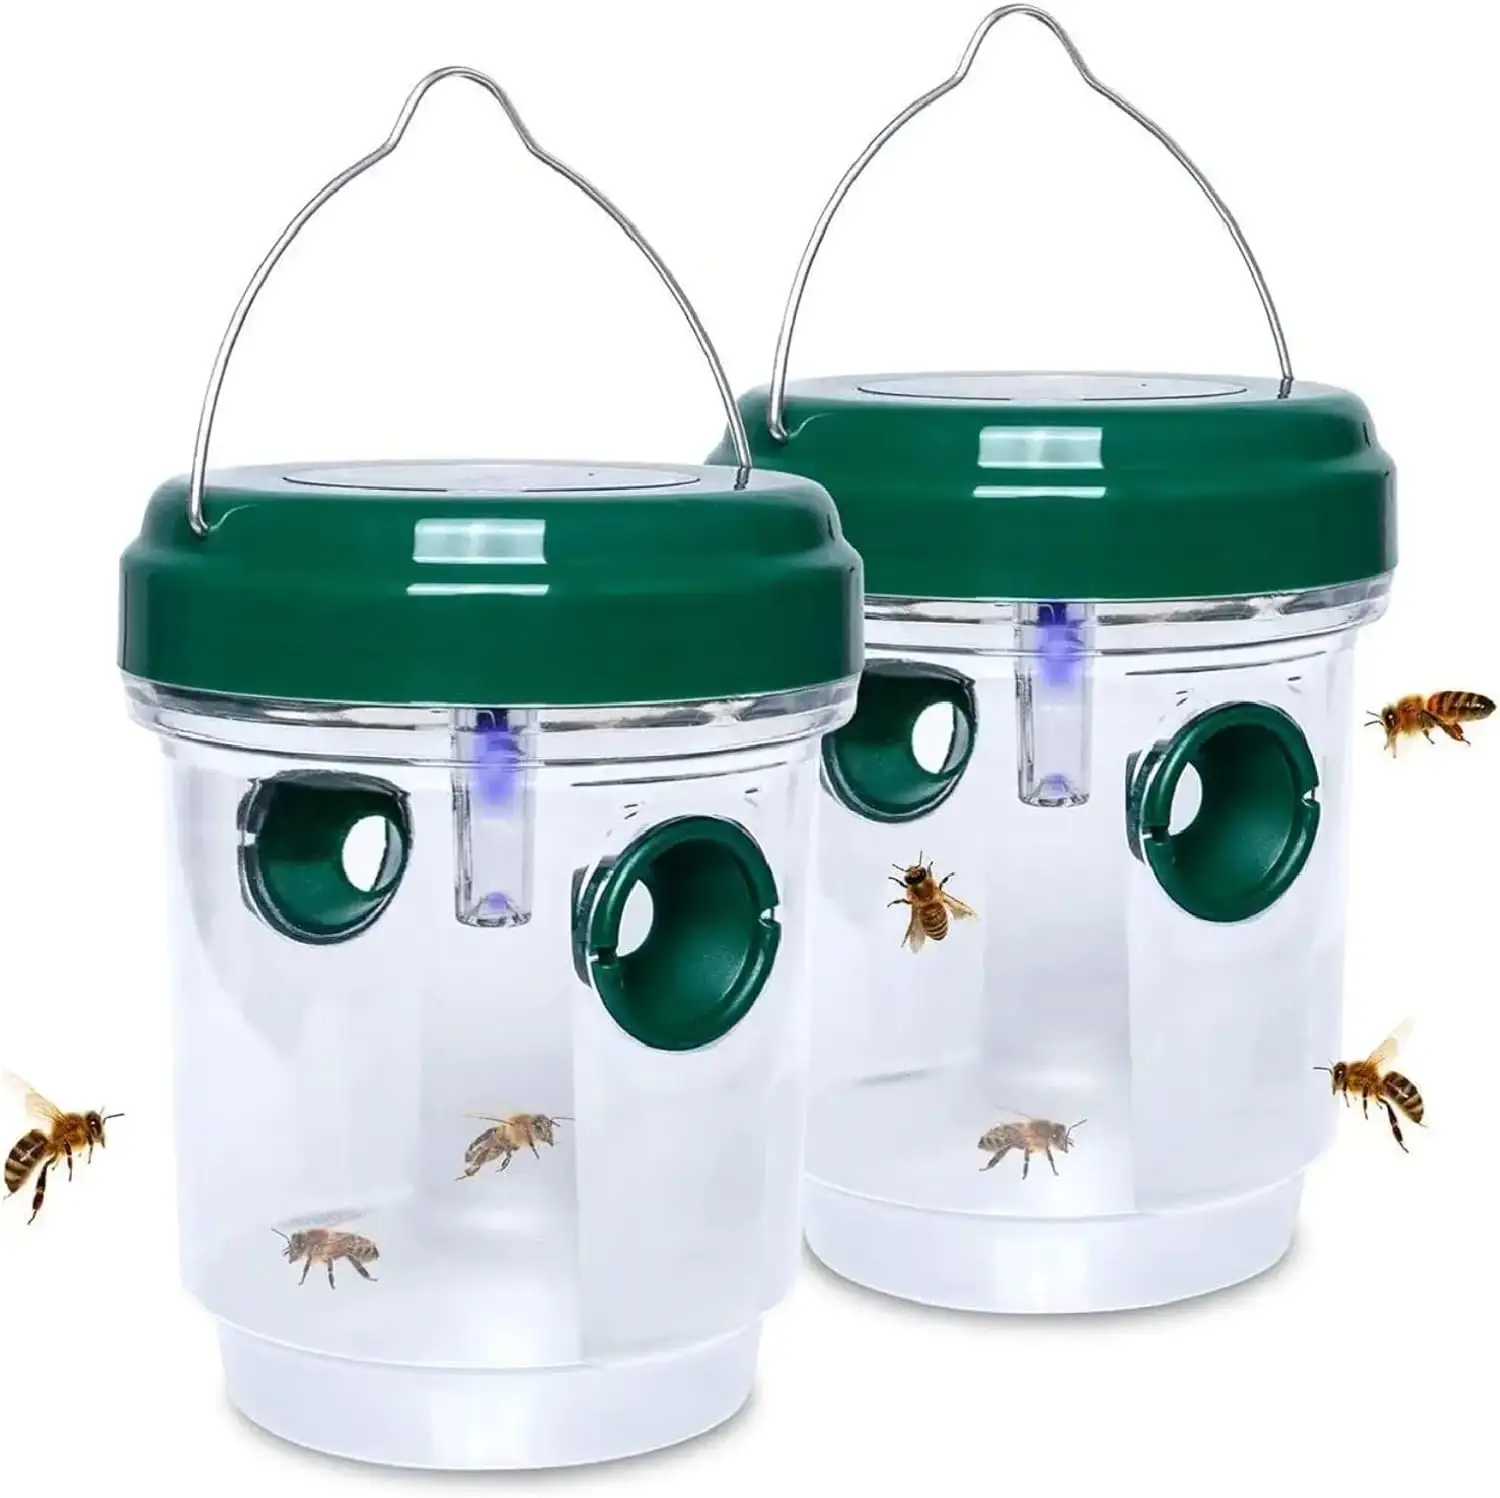 Wespenfalle solarbetriebene Bienenfalle wiederverwendbare Fliegenfallen im Freien hängender Wespenmörder mit UV-LED-Licht fliegende Insekten Bienenmörder Heim